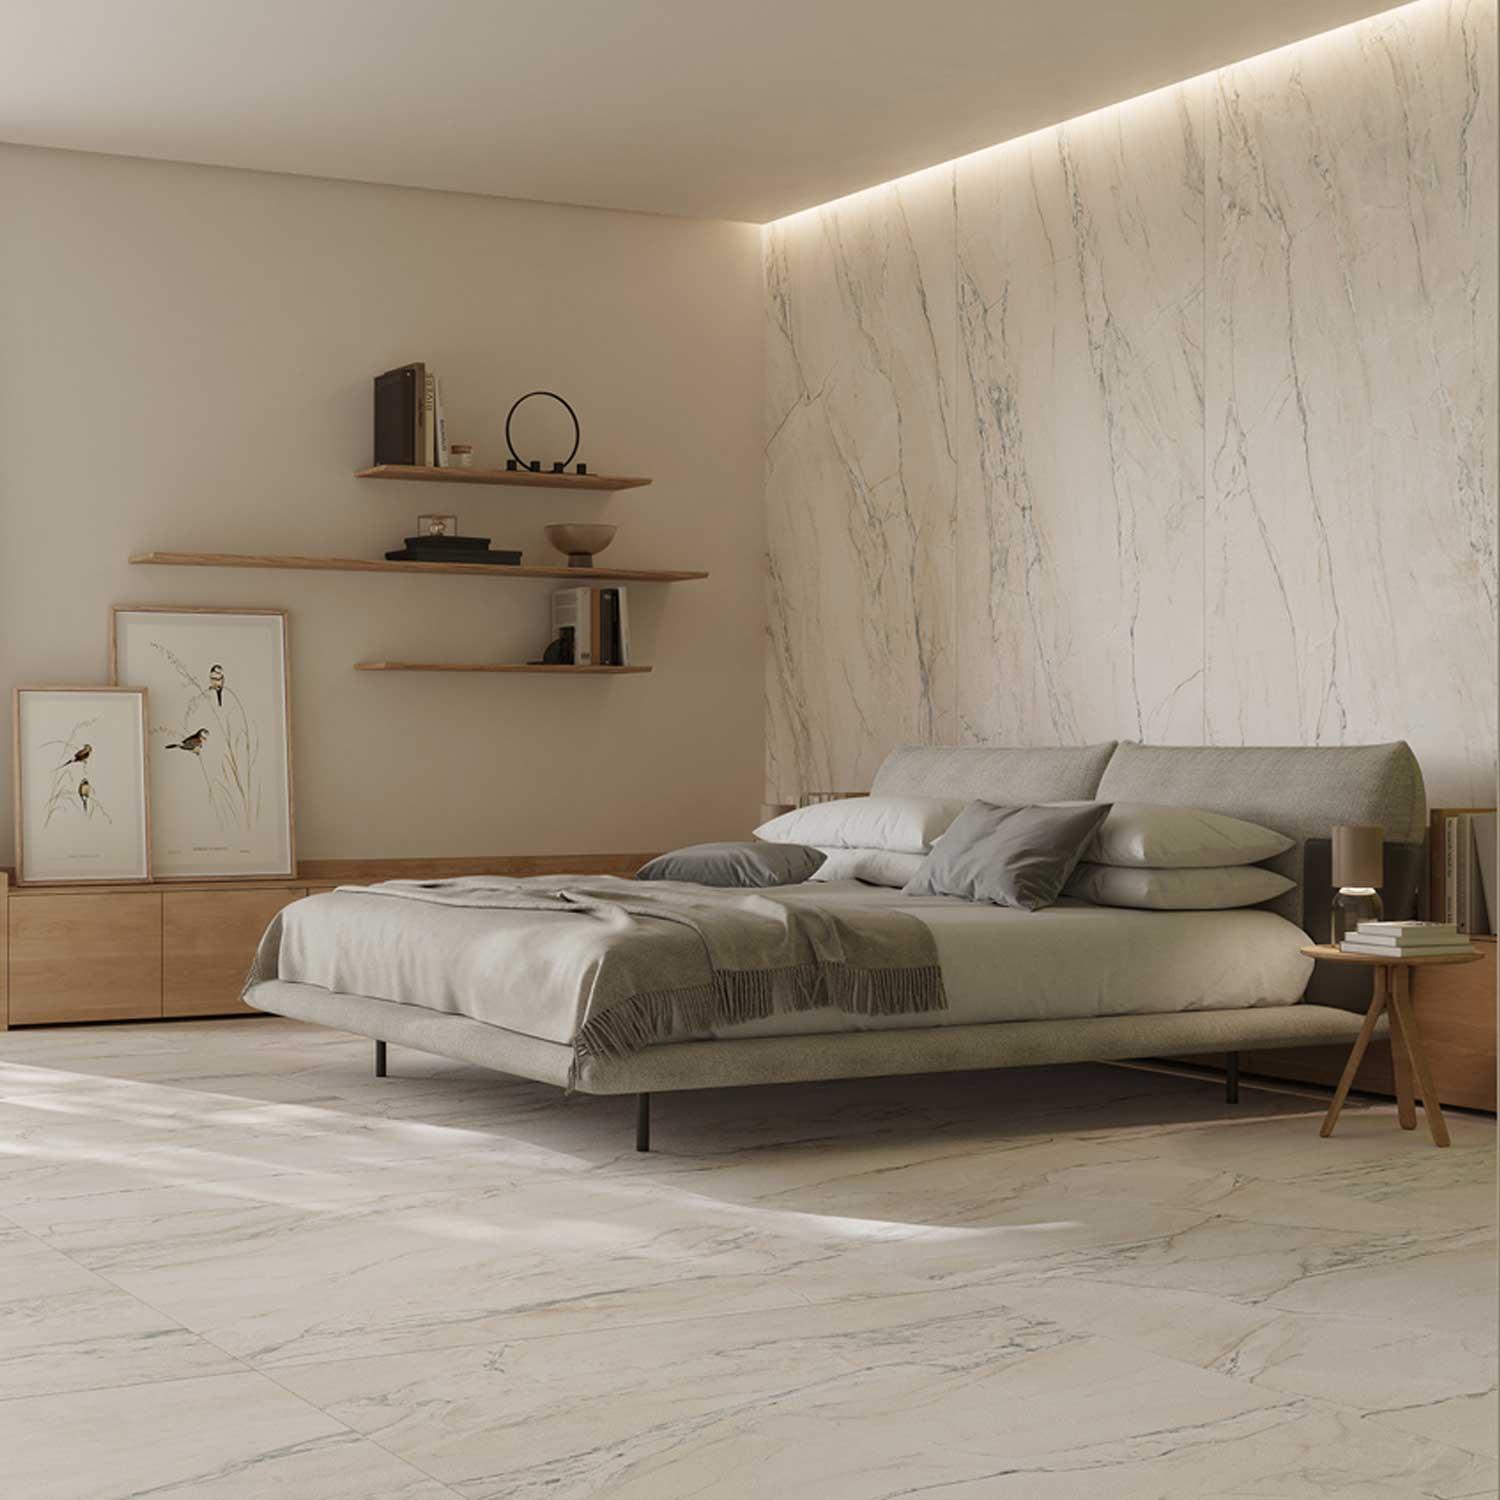 The Alps Glazed Porcelain Tile Macaub Matt Finish Tile Wall-Floor 1200 x 600 mm